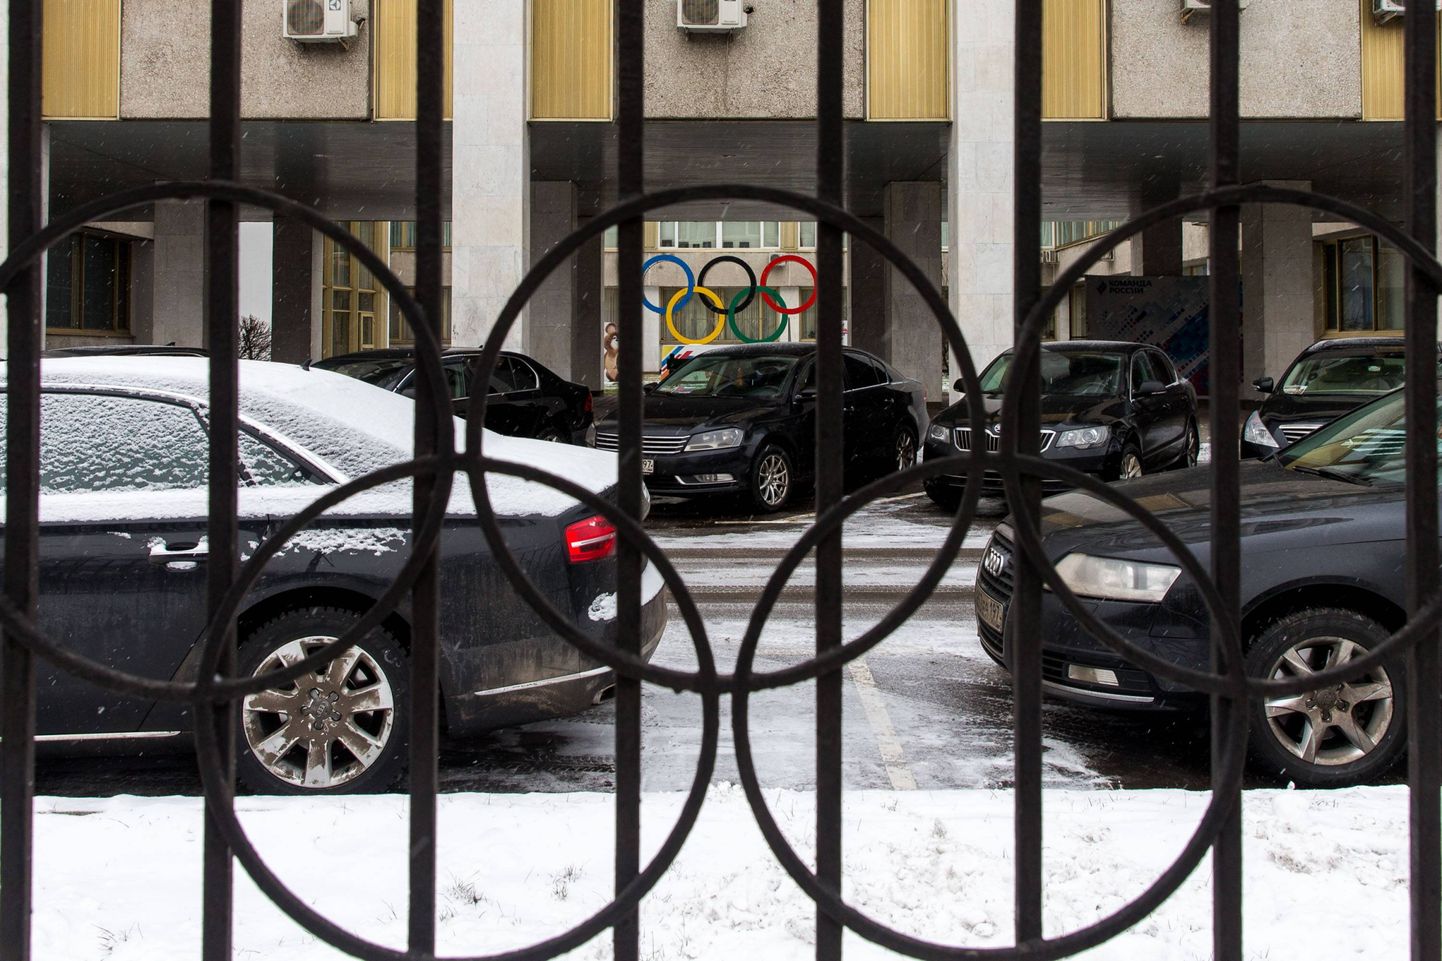 Olümpiarõngastega raudaed, mis piirab Venemaa Olümpiakomitee hoonet. Ootamatult sümboolne vaatepilt.